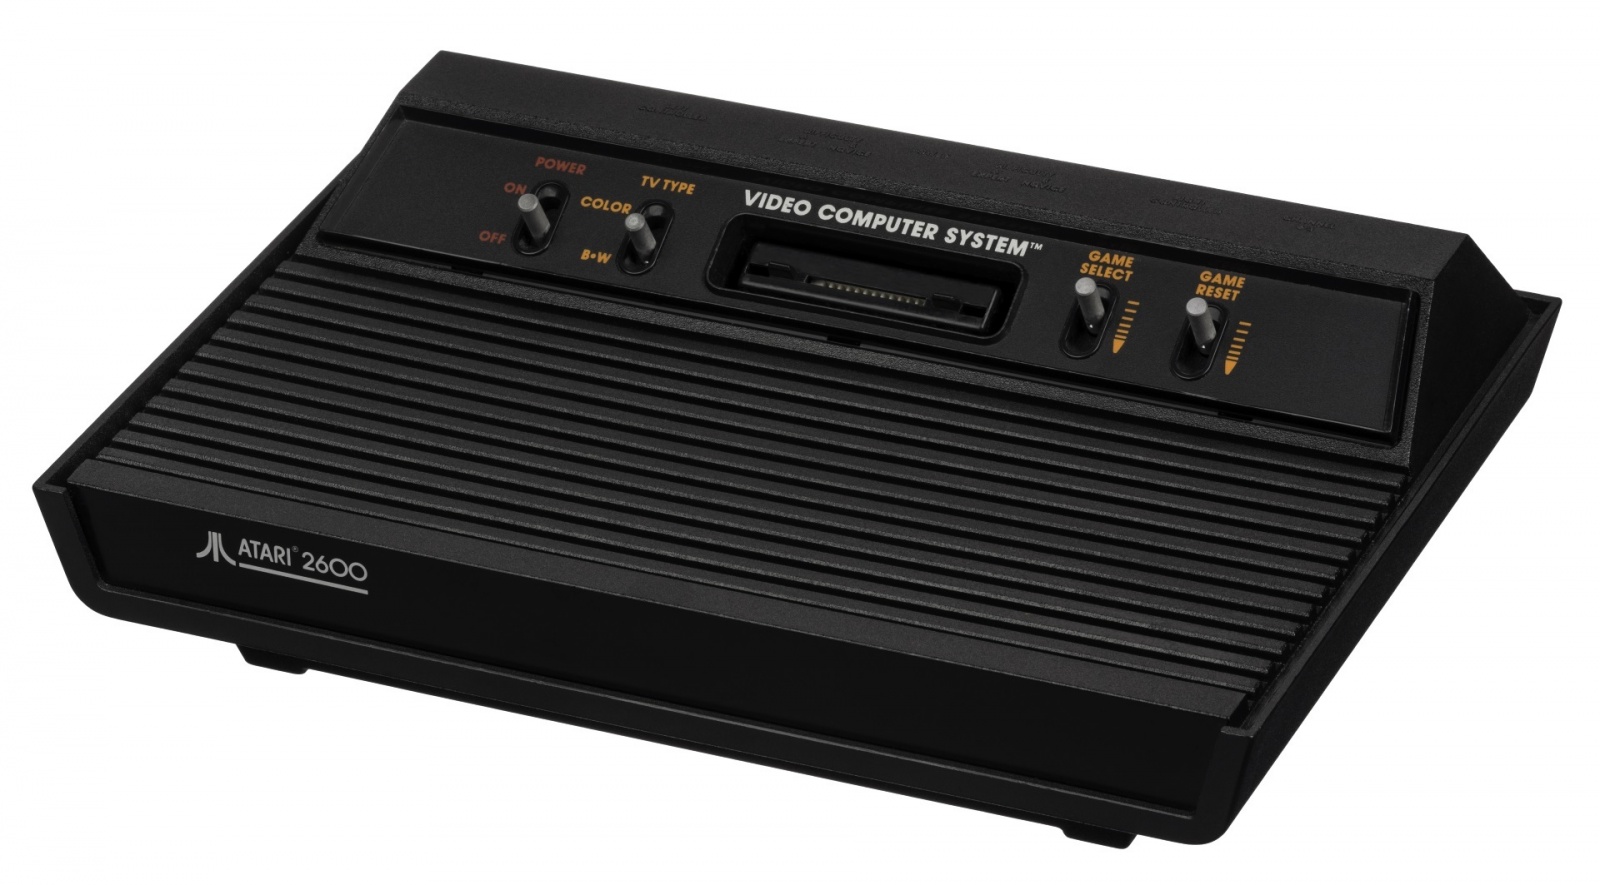 Rambo TV Games (Atari 2600) [статья с кучей фото и капелькой видео] - 15